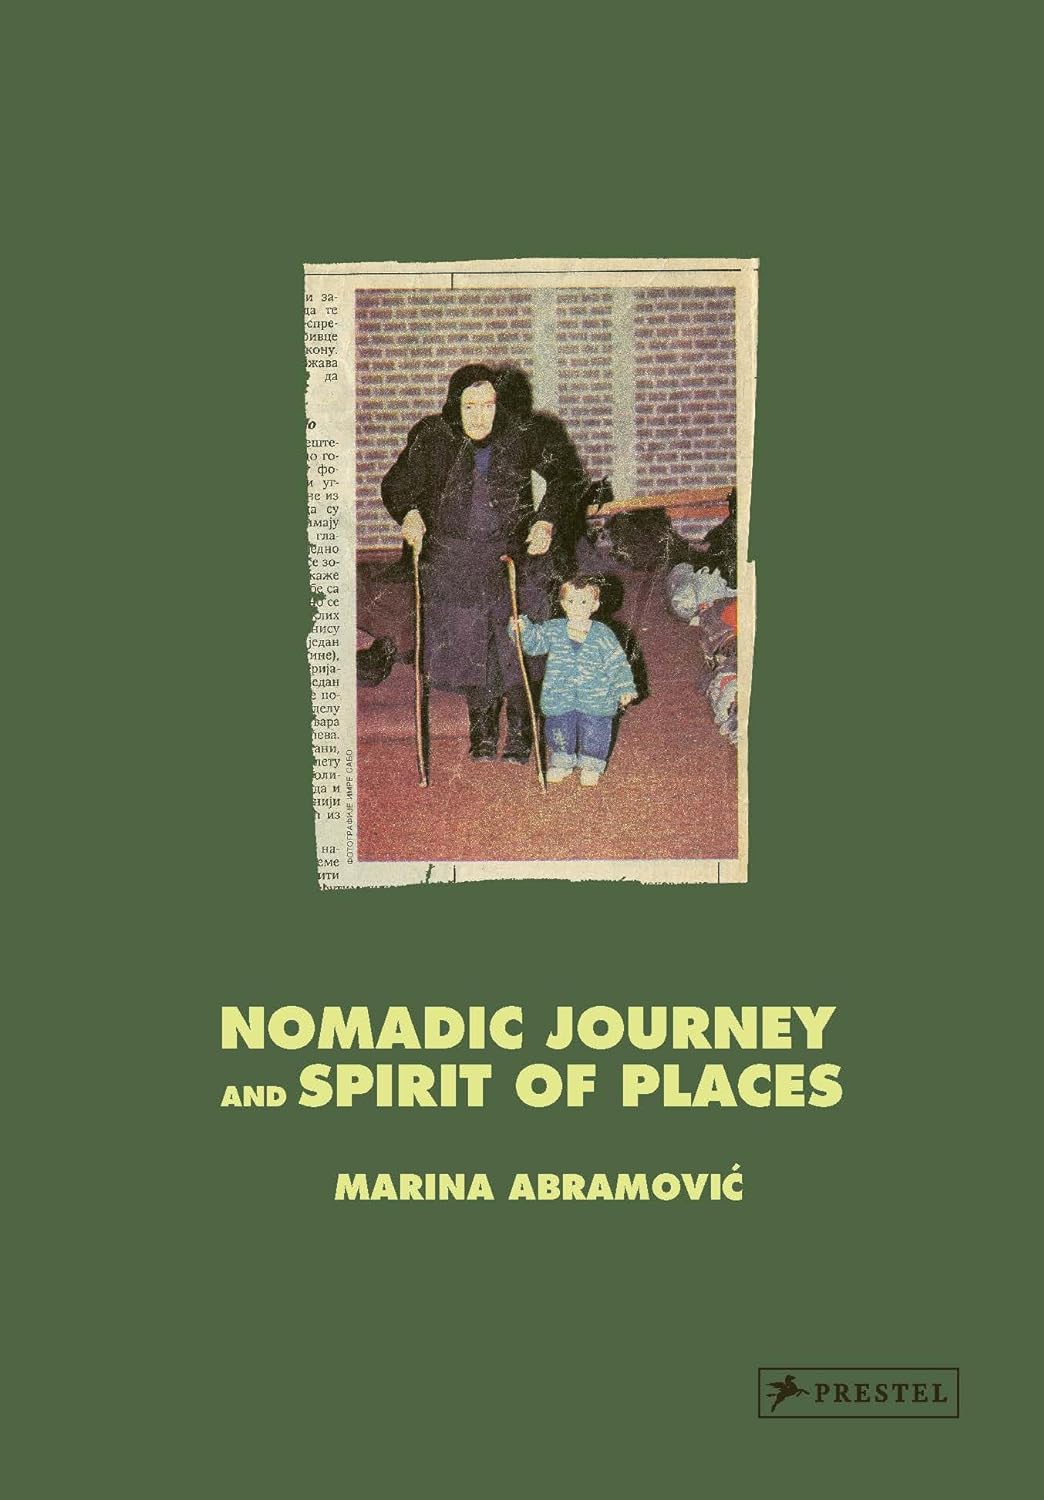 Marina Abramovic - Nomadic Journey